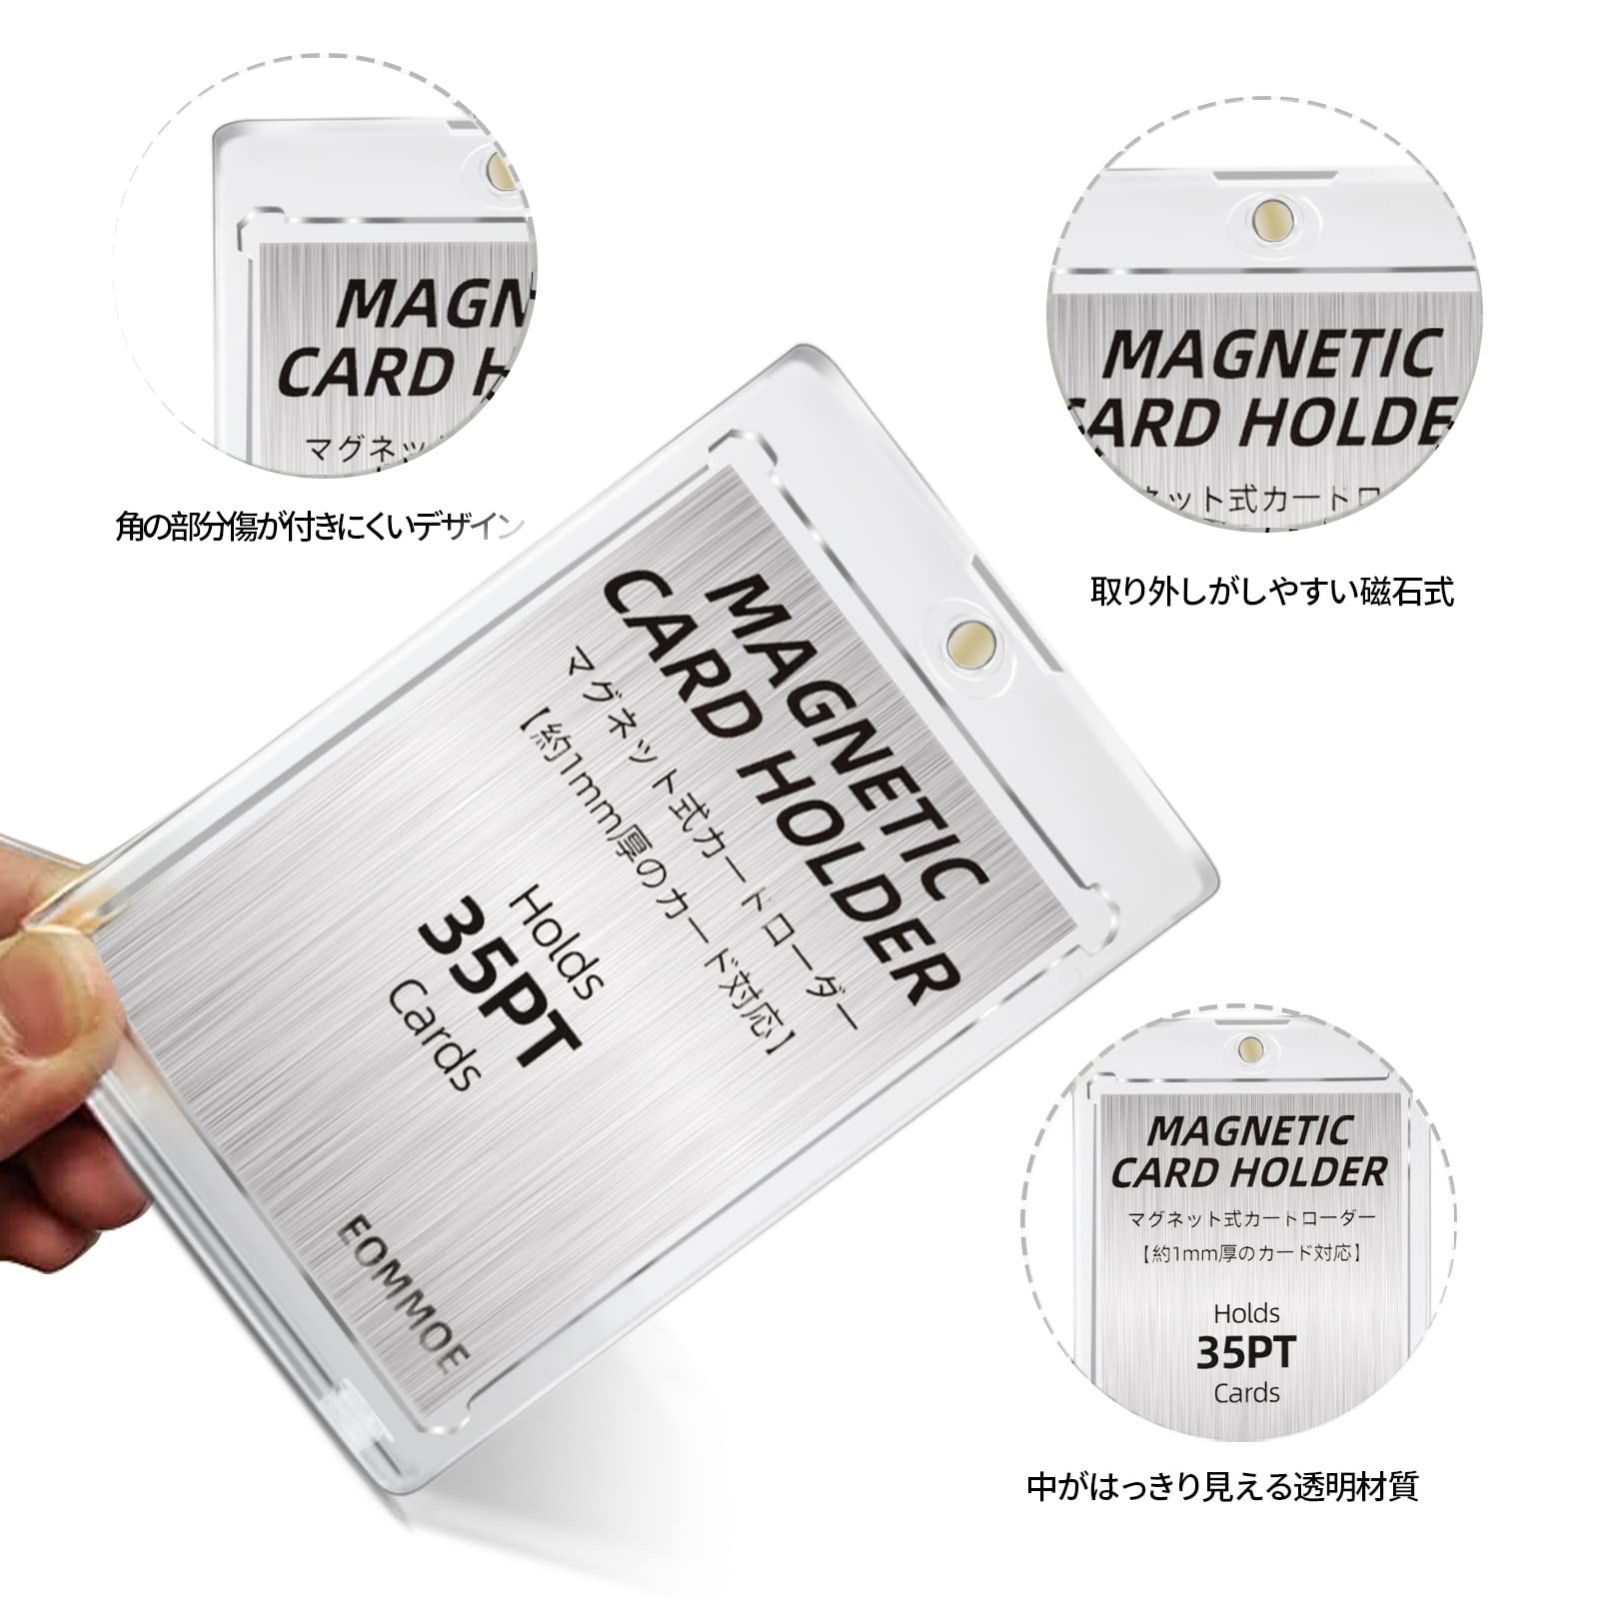 ○ マグネットローダー 10個 カードローダー トレカ UVカット カード